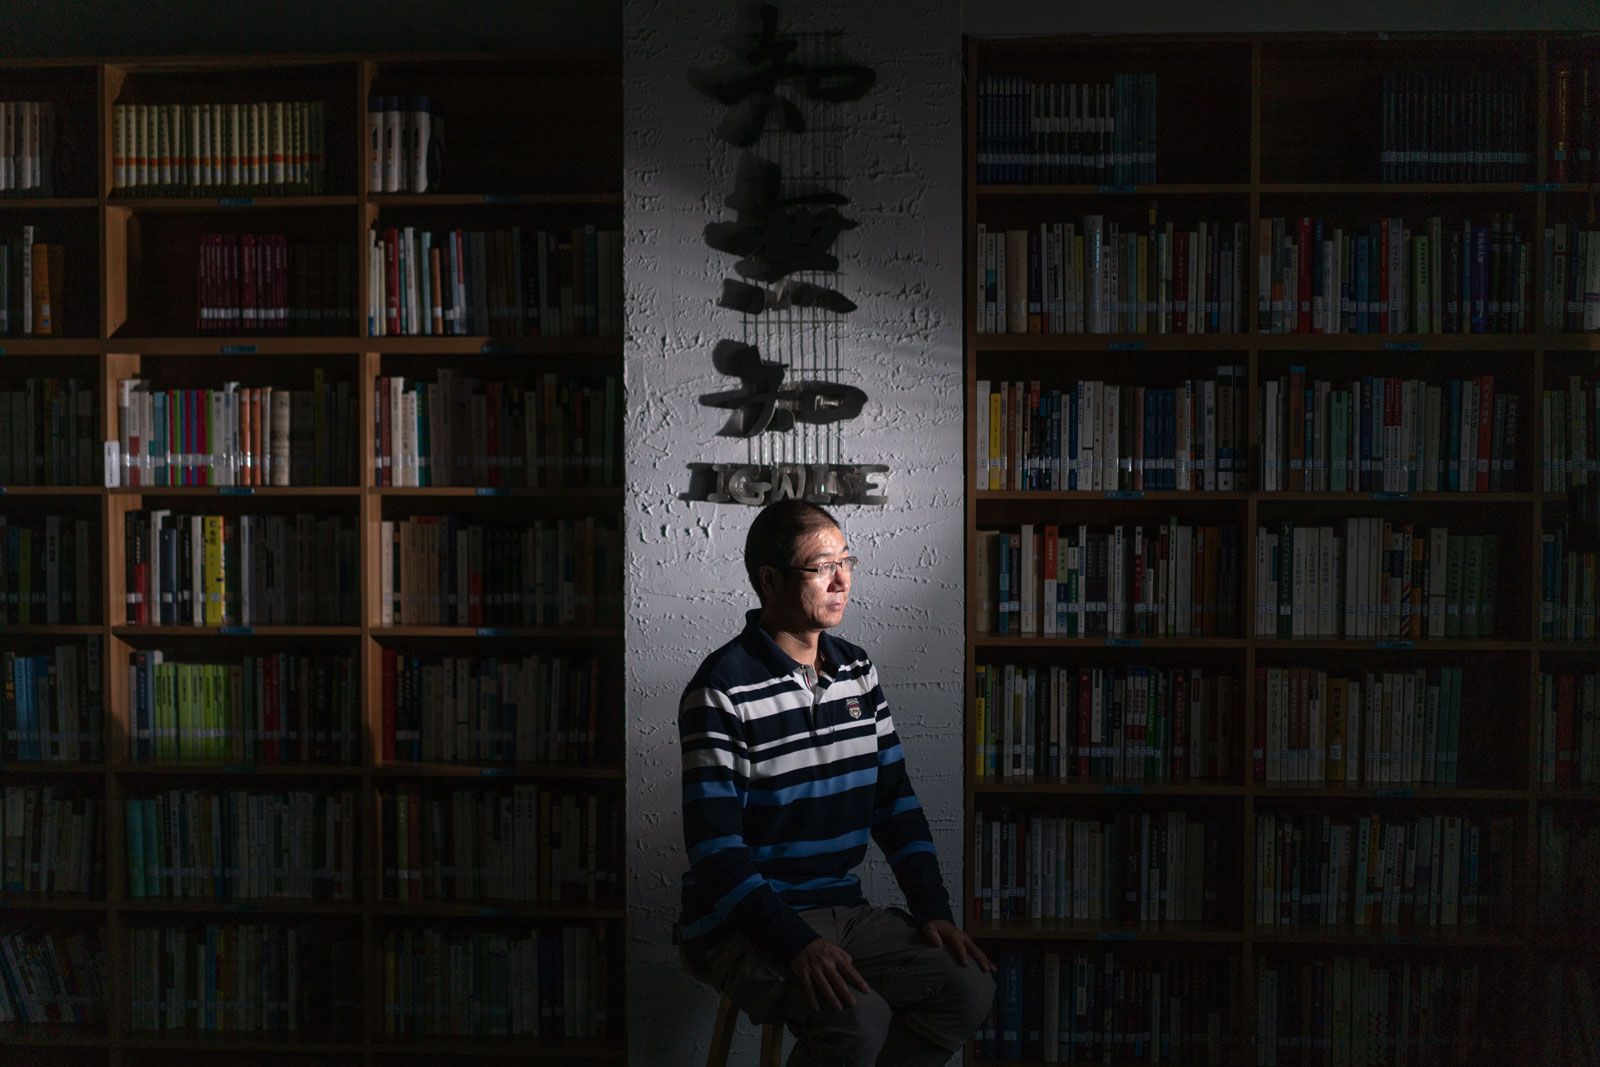 Chen Hongguo in Zhiwuzhi, the reading room he established in Xi'an. Image by Sim Chi Yin. China, 2018.